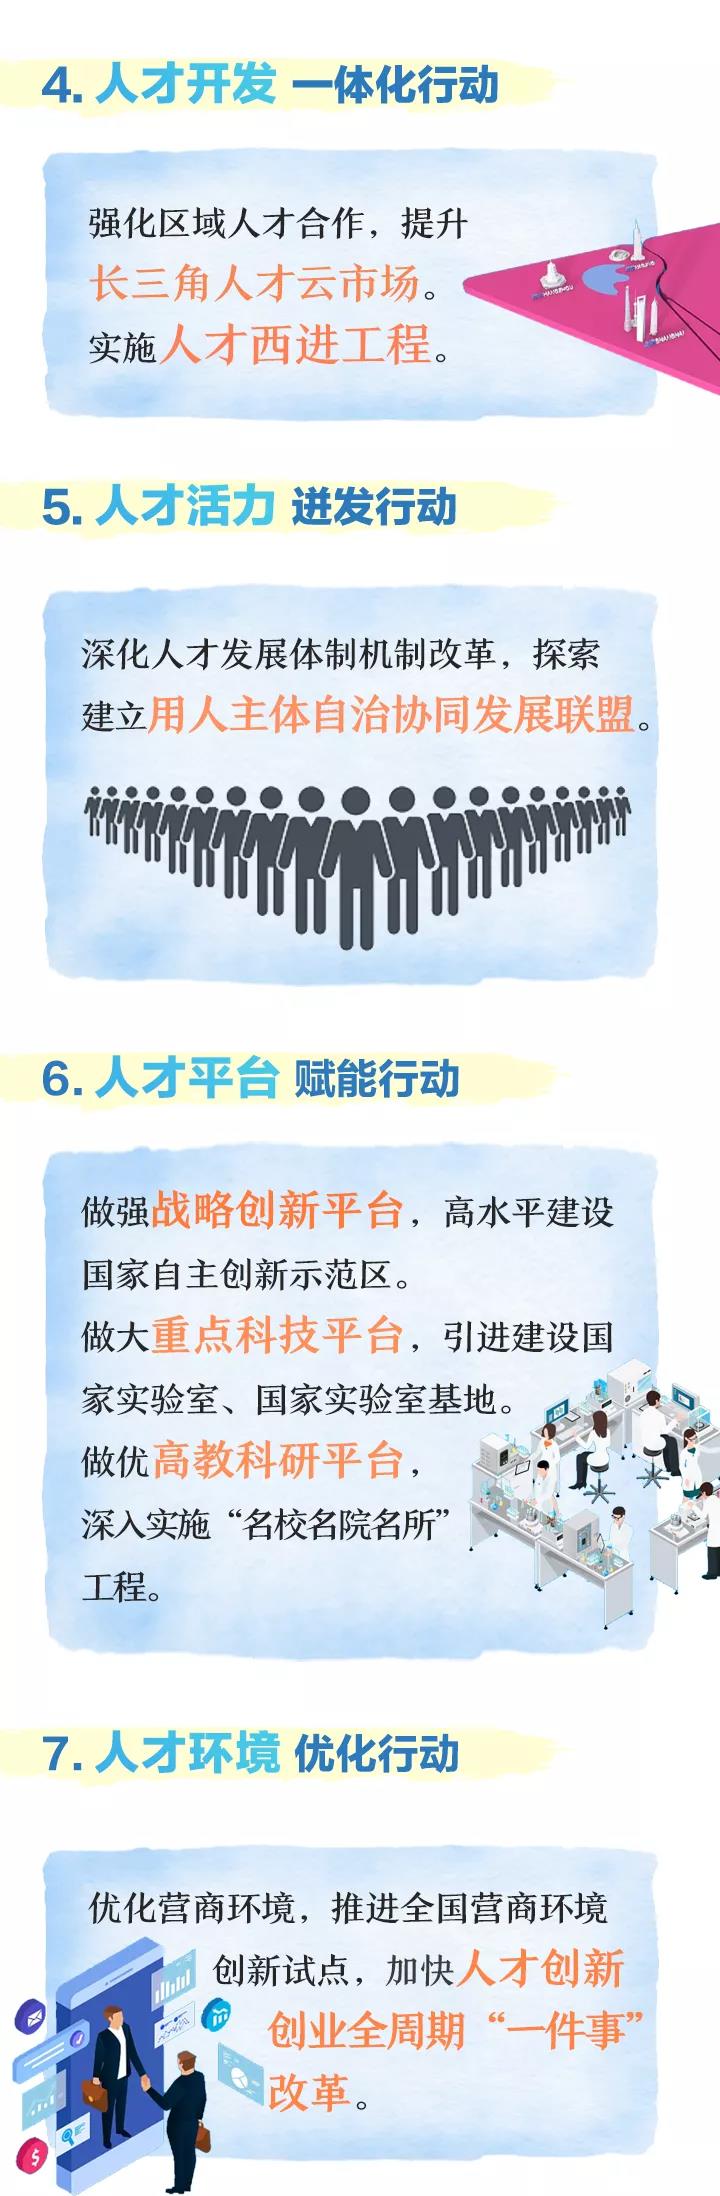 杭州拟发布多项人才新政 目标引进300万大学生！